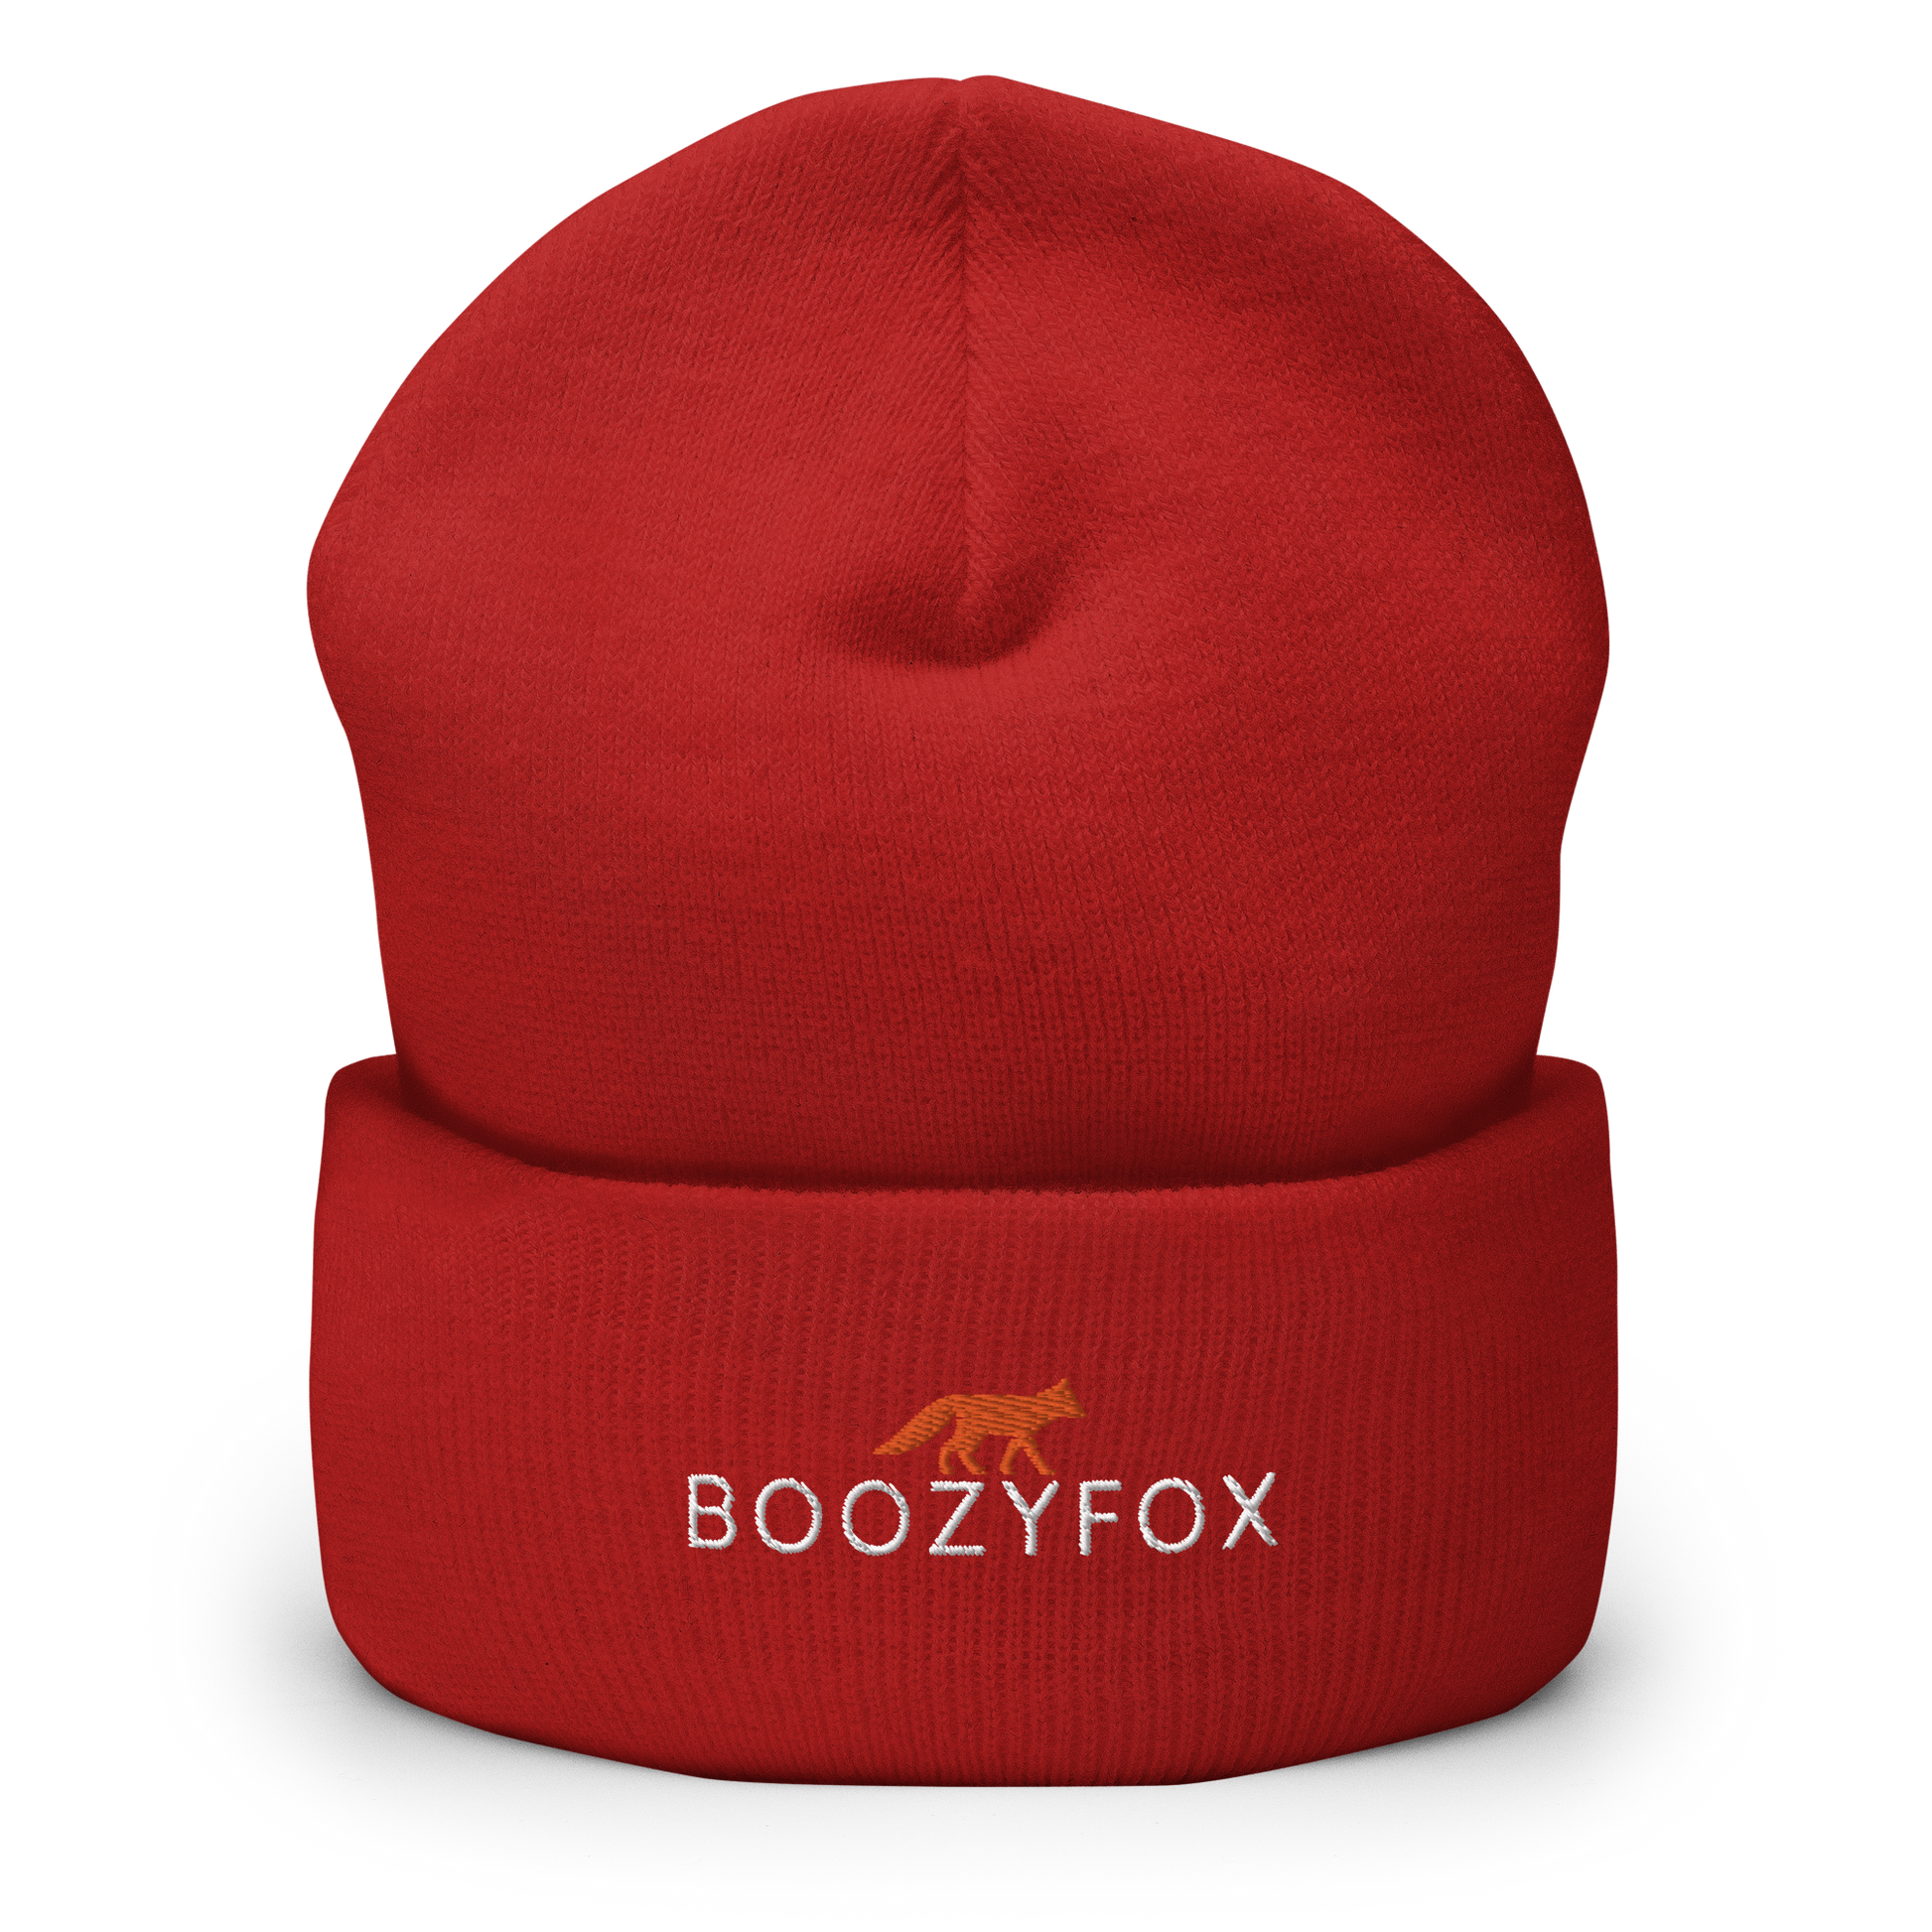 Red Cuffed Beanie With An Embroidered Boozy Fox Logo On Fold - Shop Cuffed Beanie Online - Boozy Fox